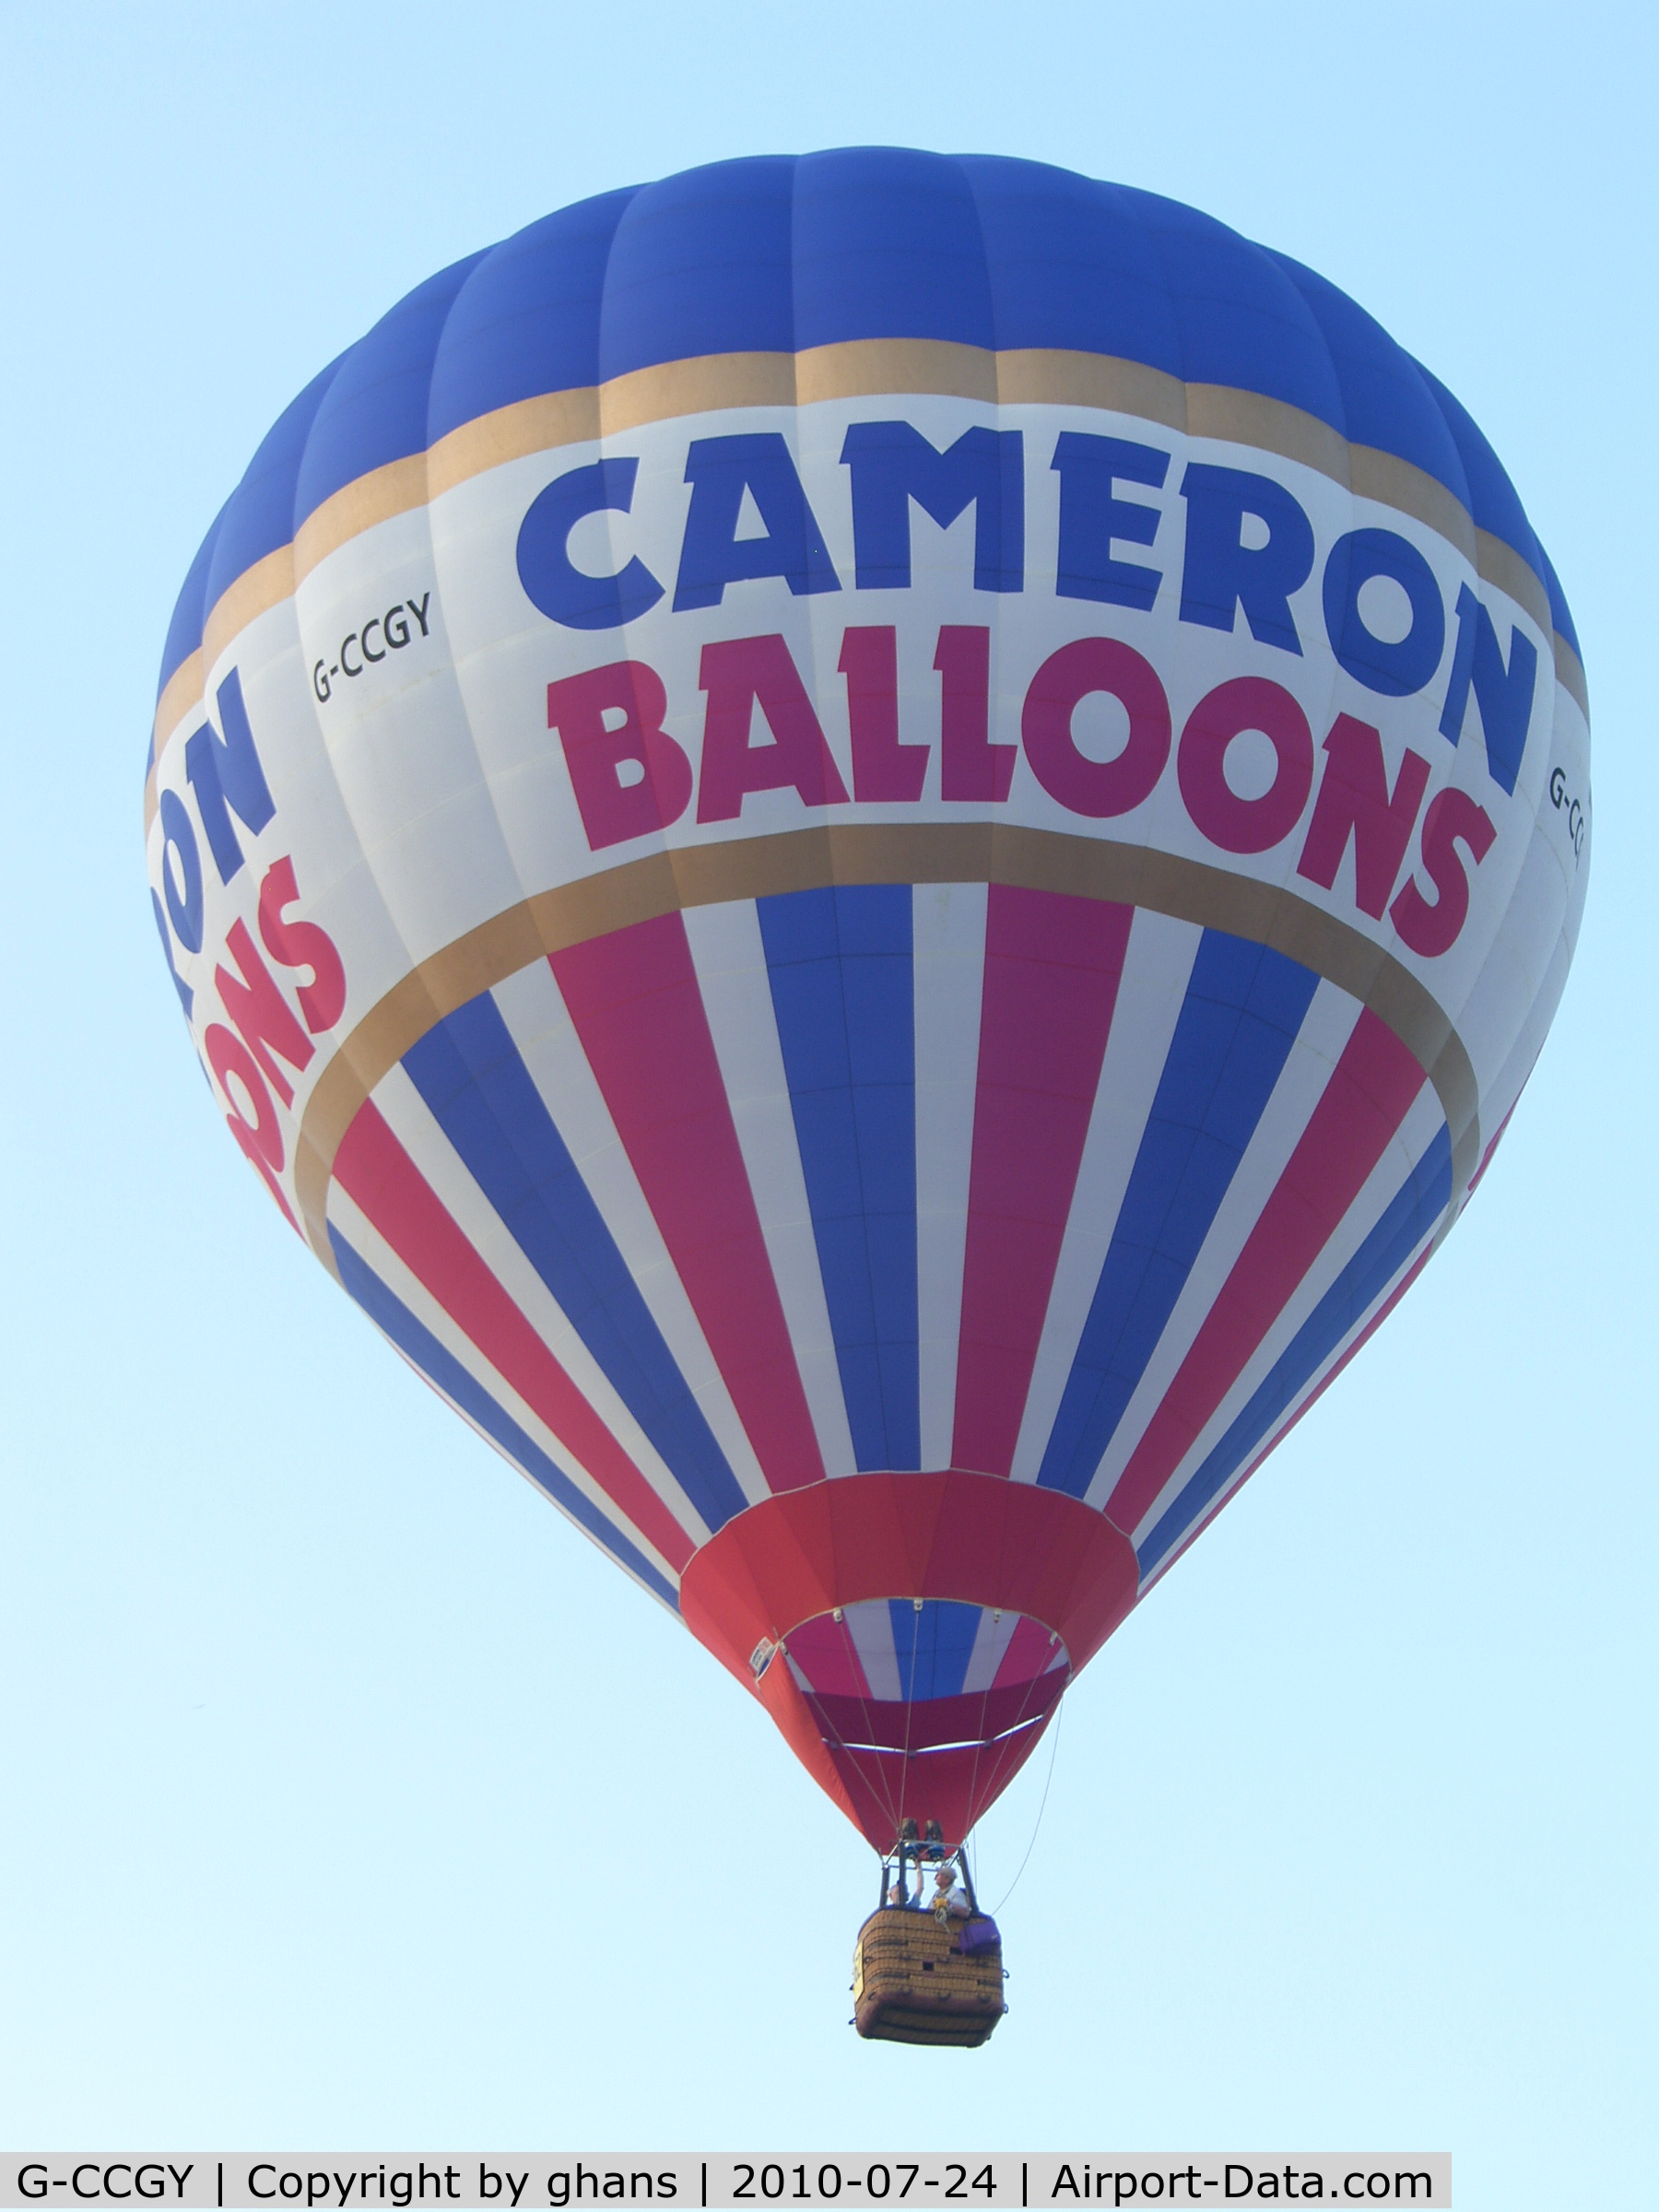 G-CCGY, 2003 Cameron Balloons Z-105 C/N 10422, Eeklo